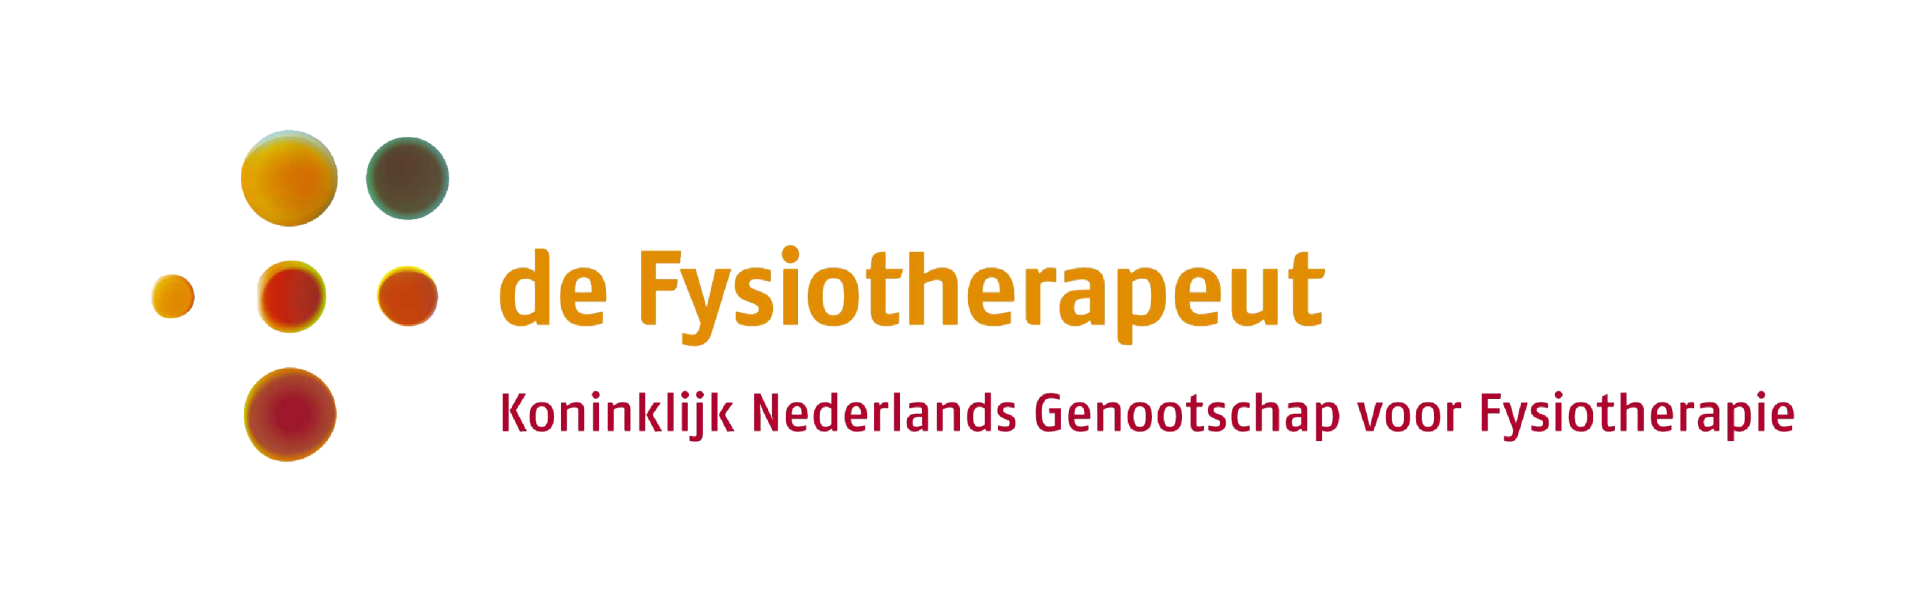 Koninklijk Genootschap voor Fysiotherapie Logo